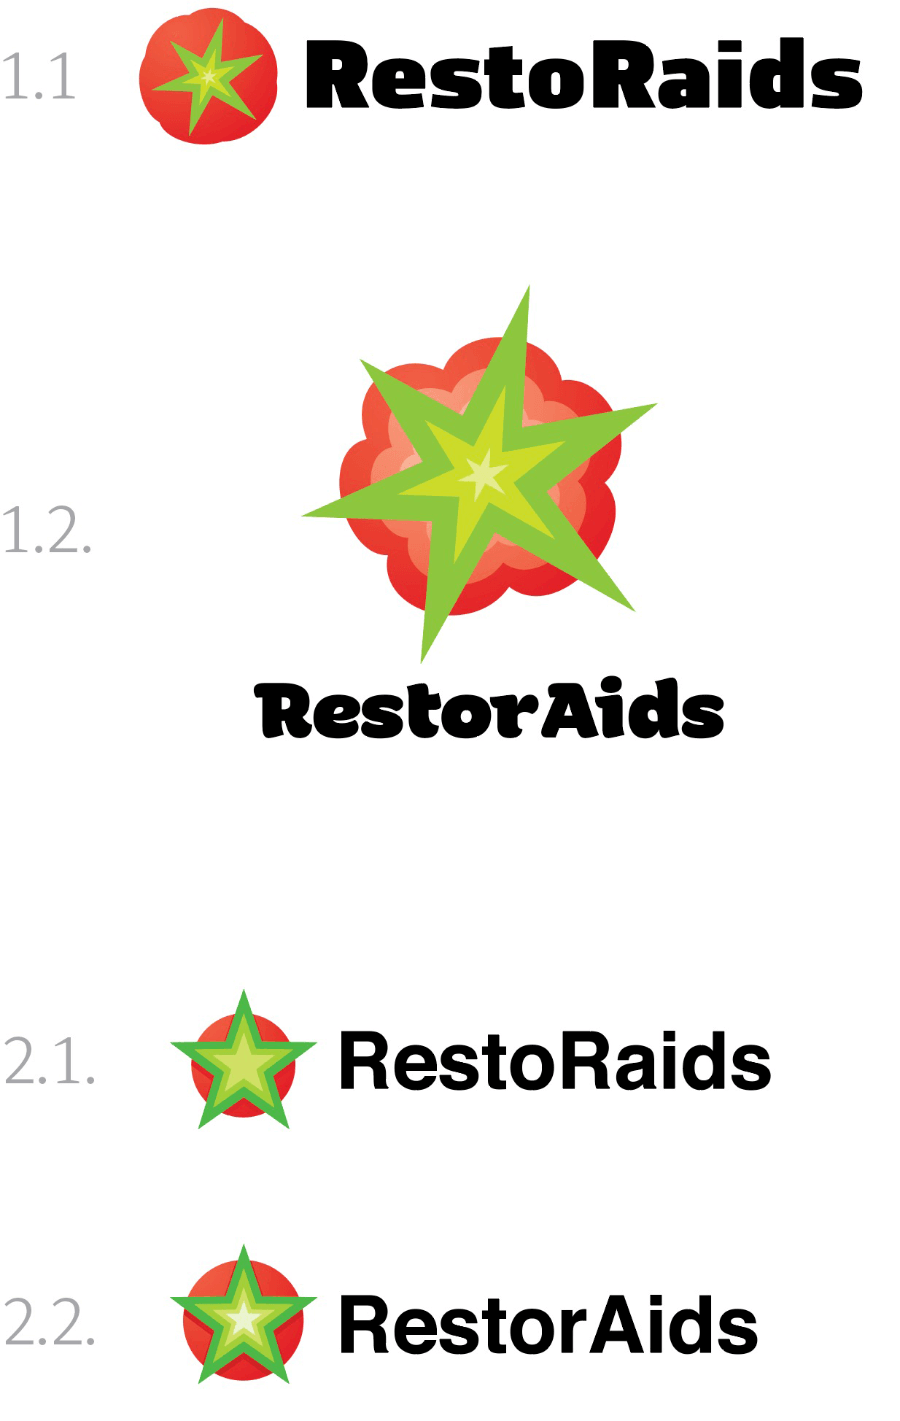 restoraids process 02